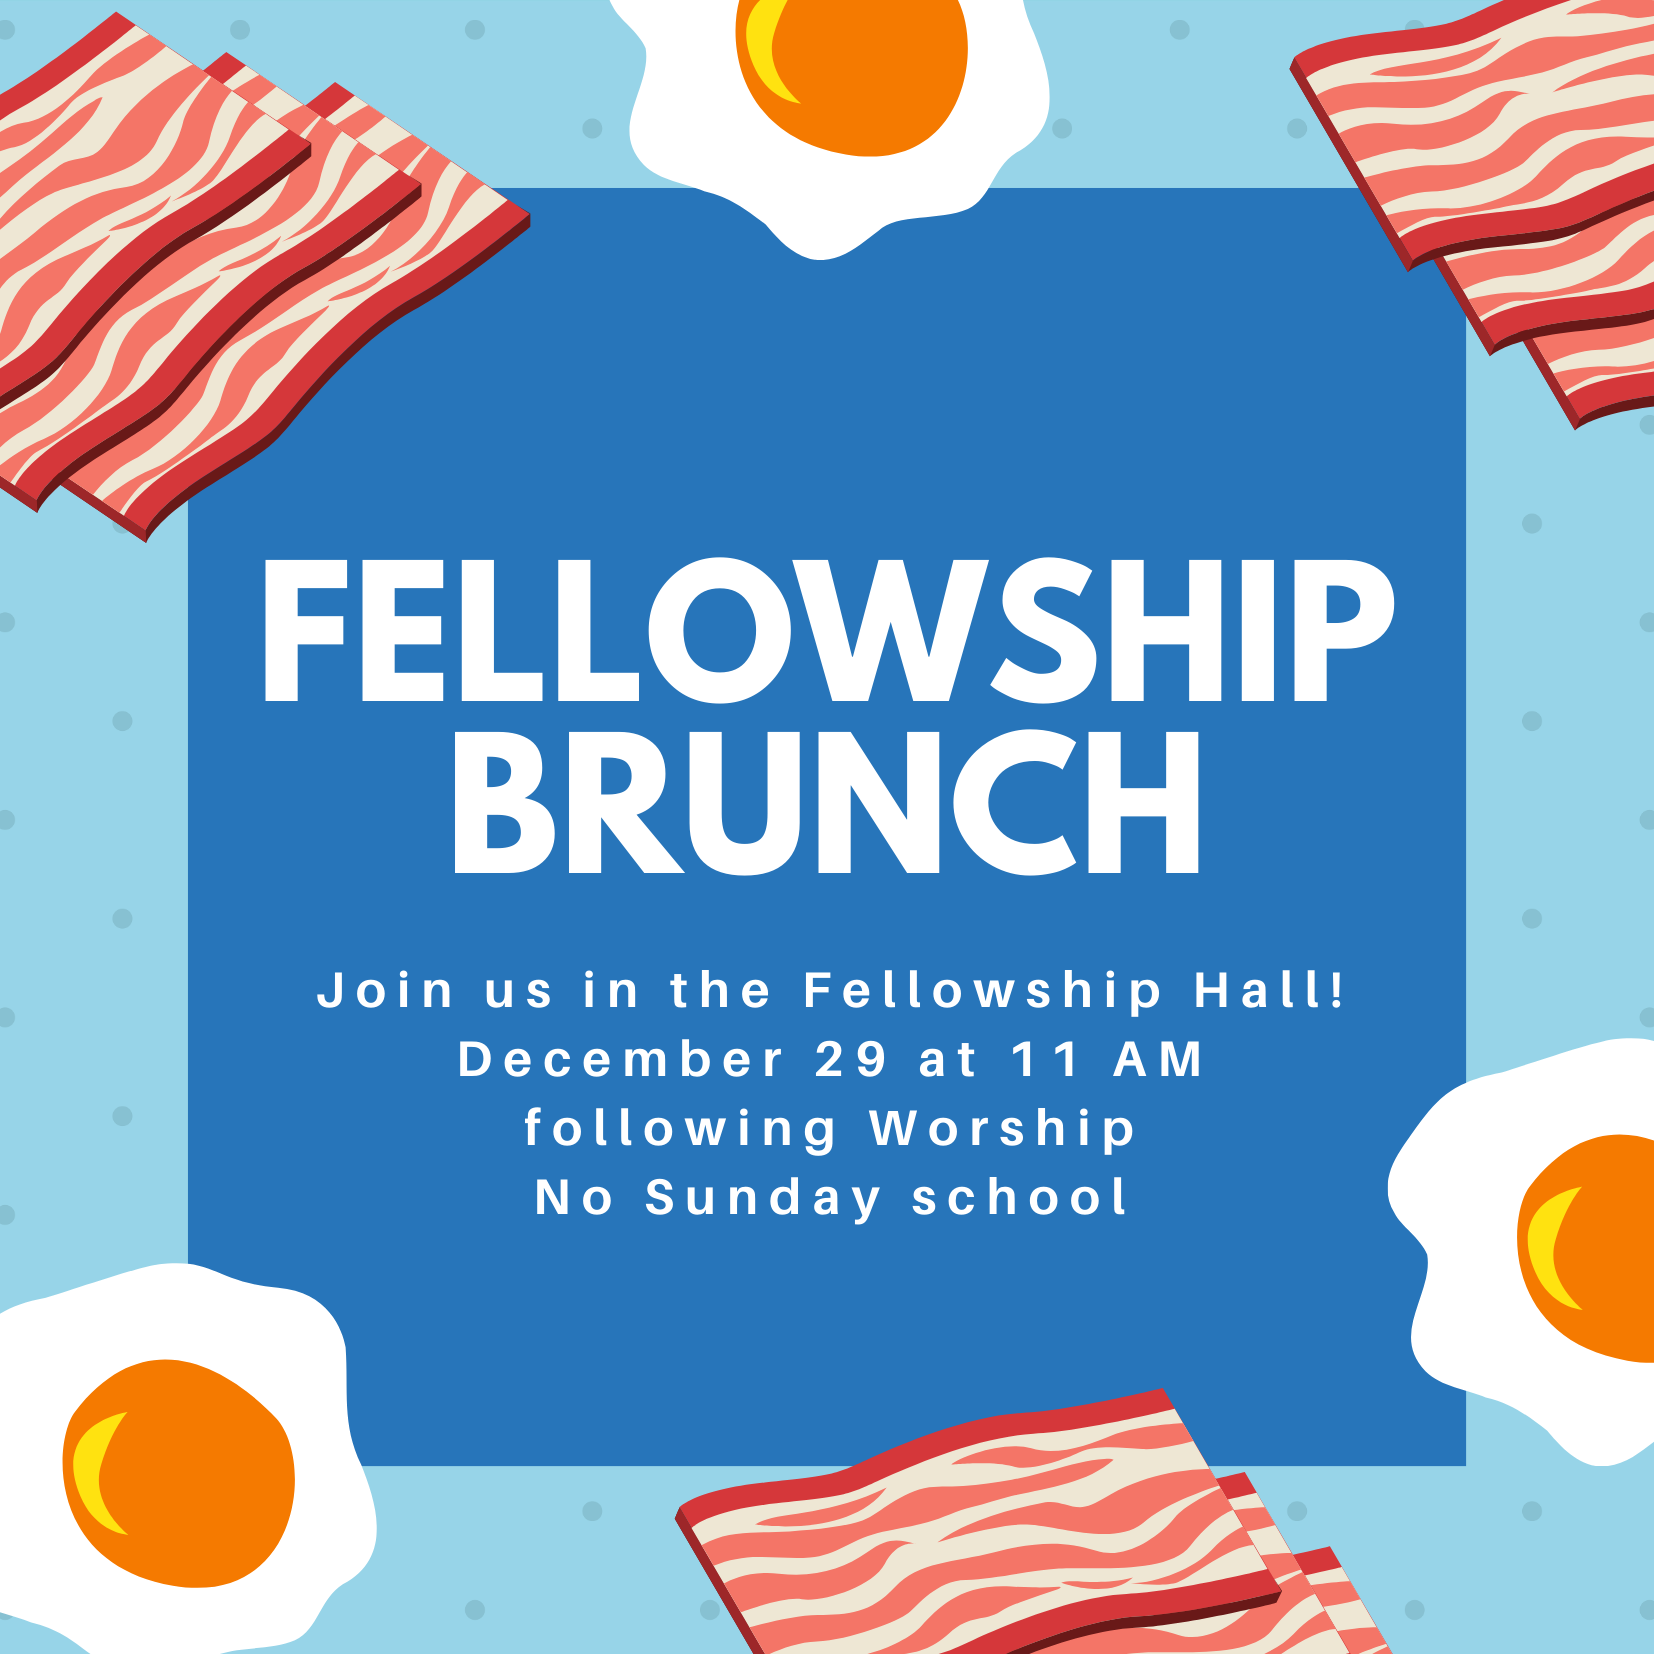 Fellowship Brunch: Sunday, December 29 11:00 AM